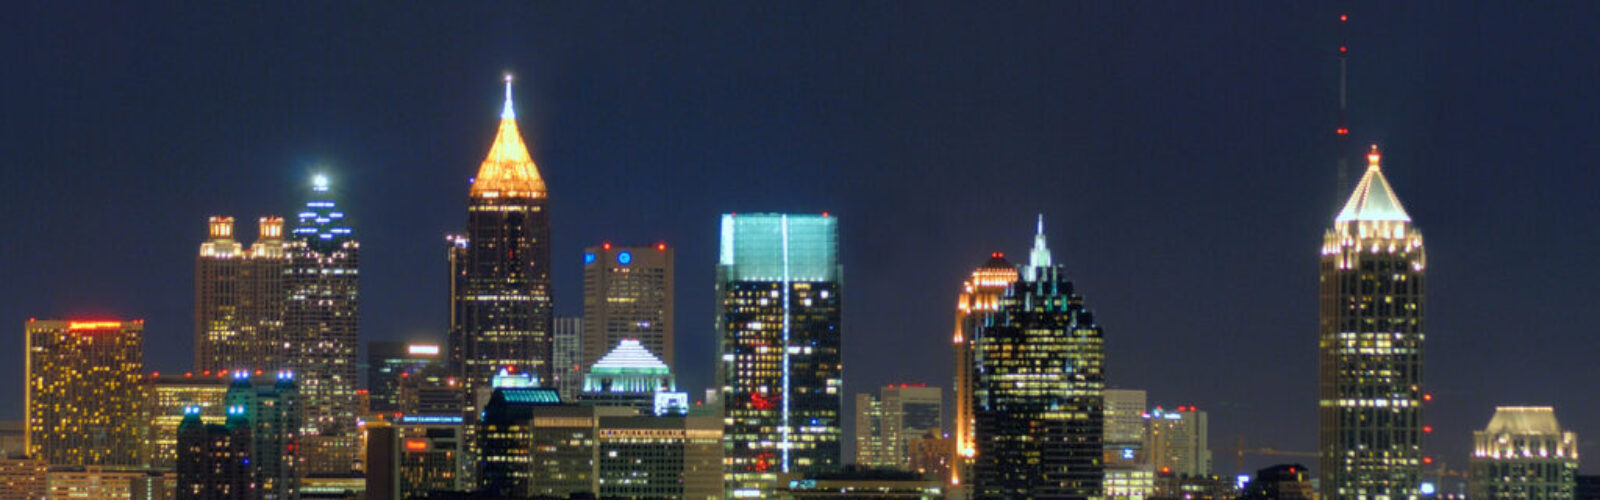 Atlanta_Skyline_from_Buckhead